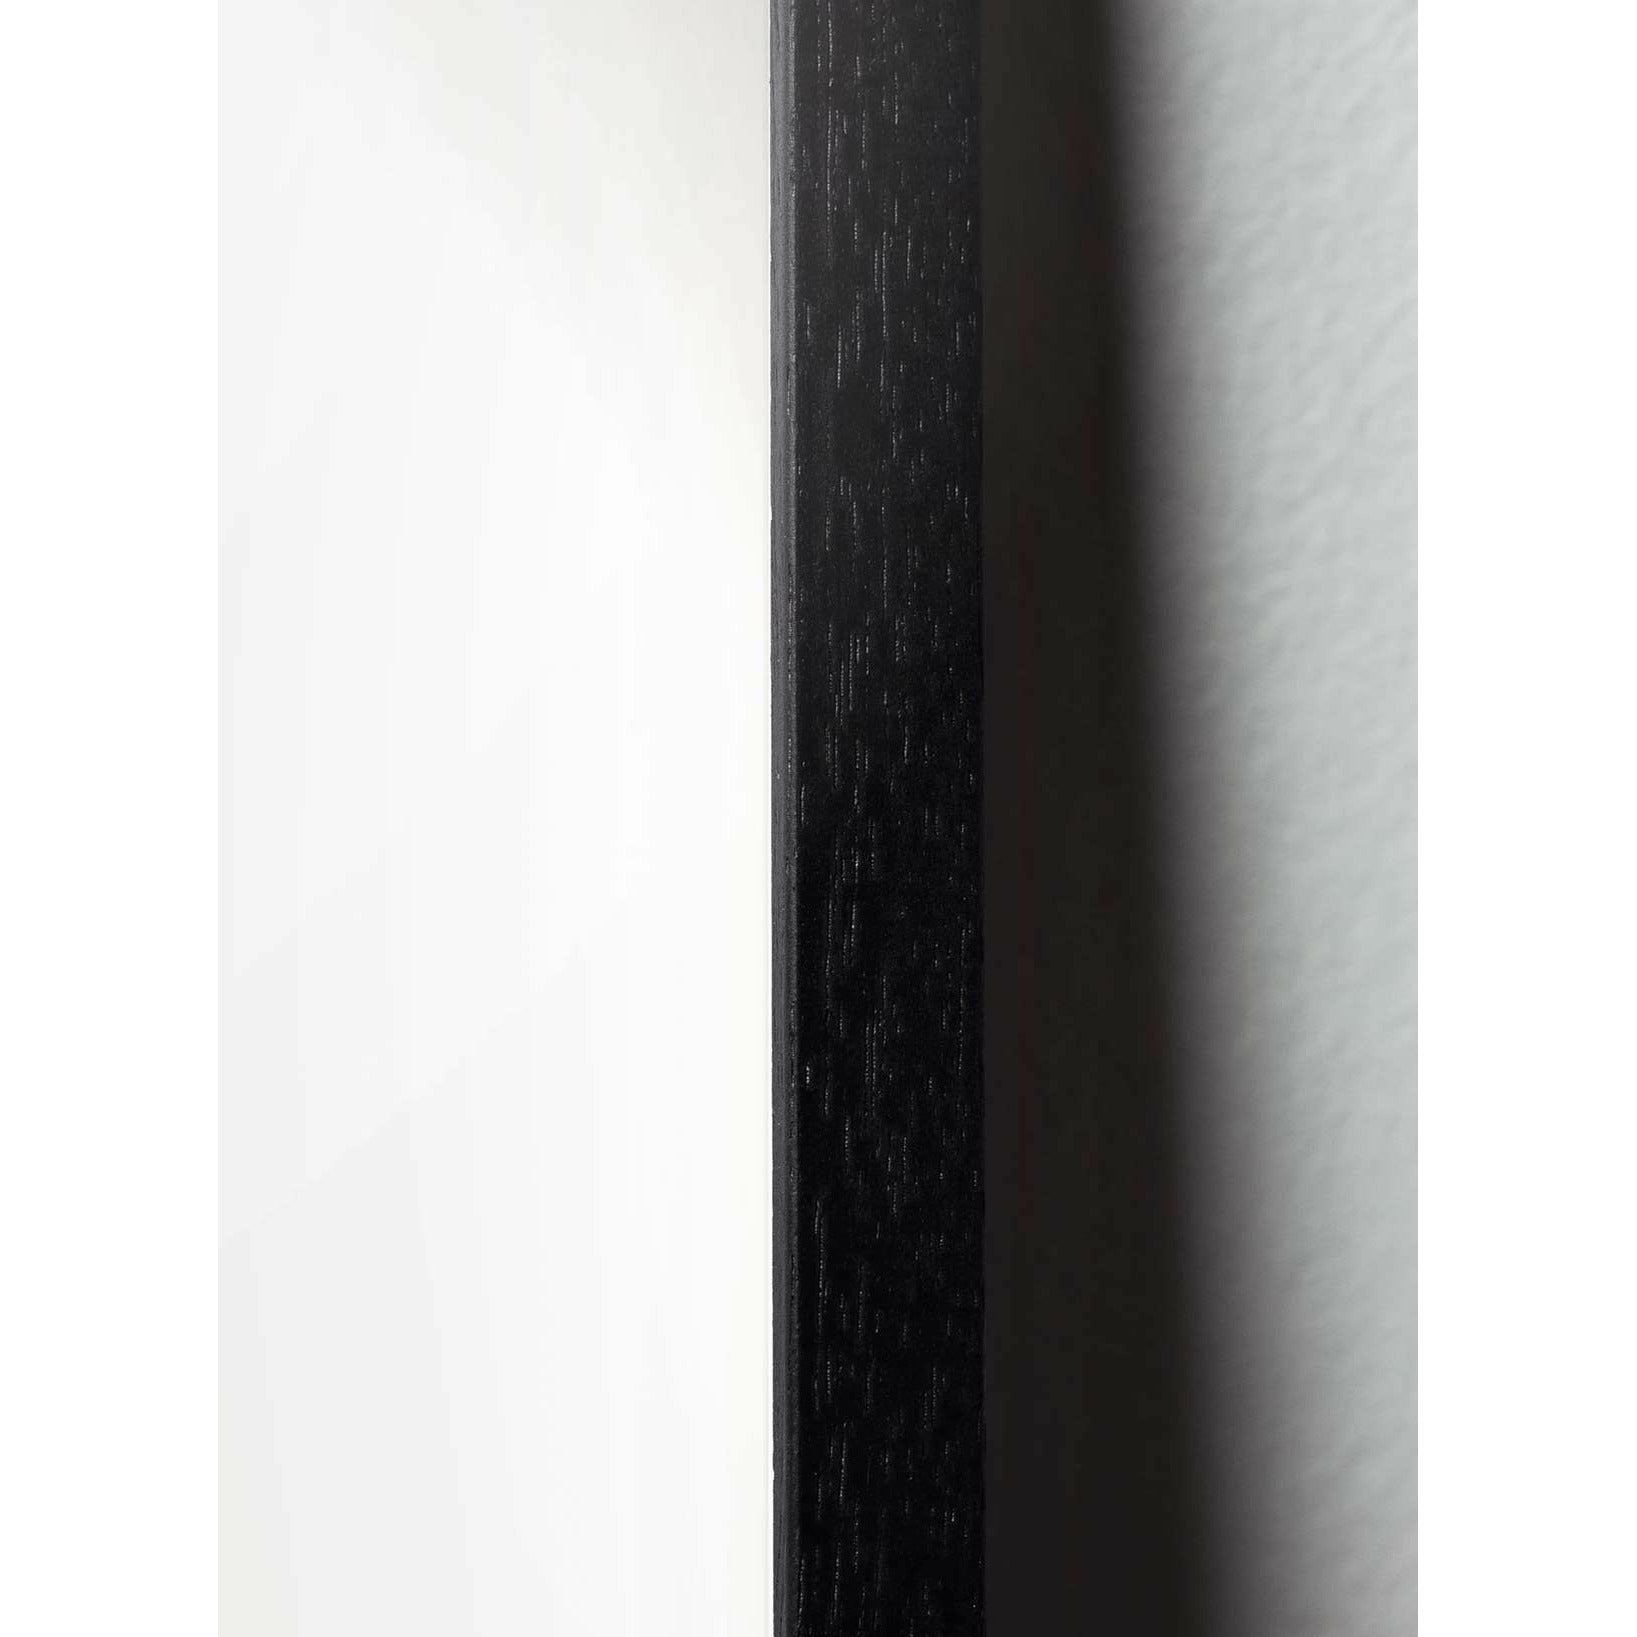 Brainchild Äggfigursaffisch, ram i svart -målat trä 70x100 cm, svart